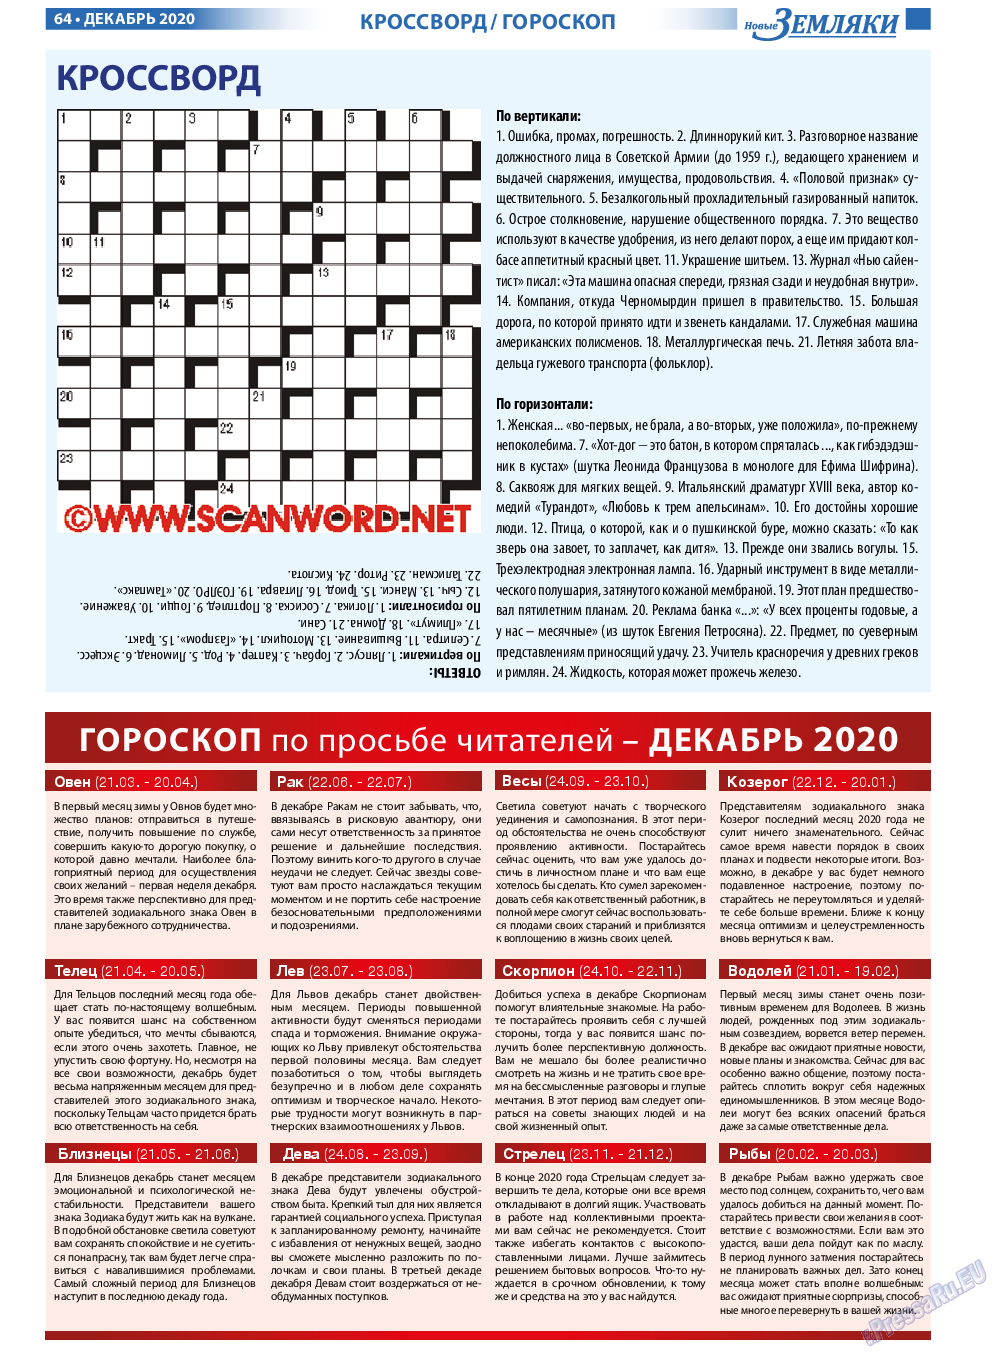 Новые Земляки, газета. 2020 №12 стр.64